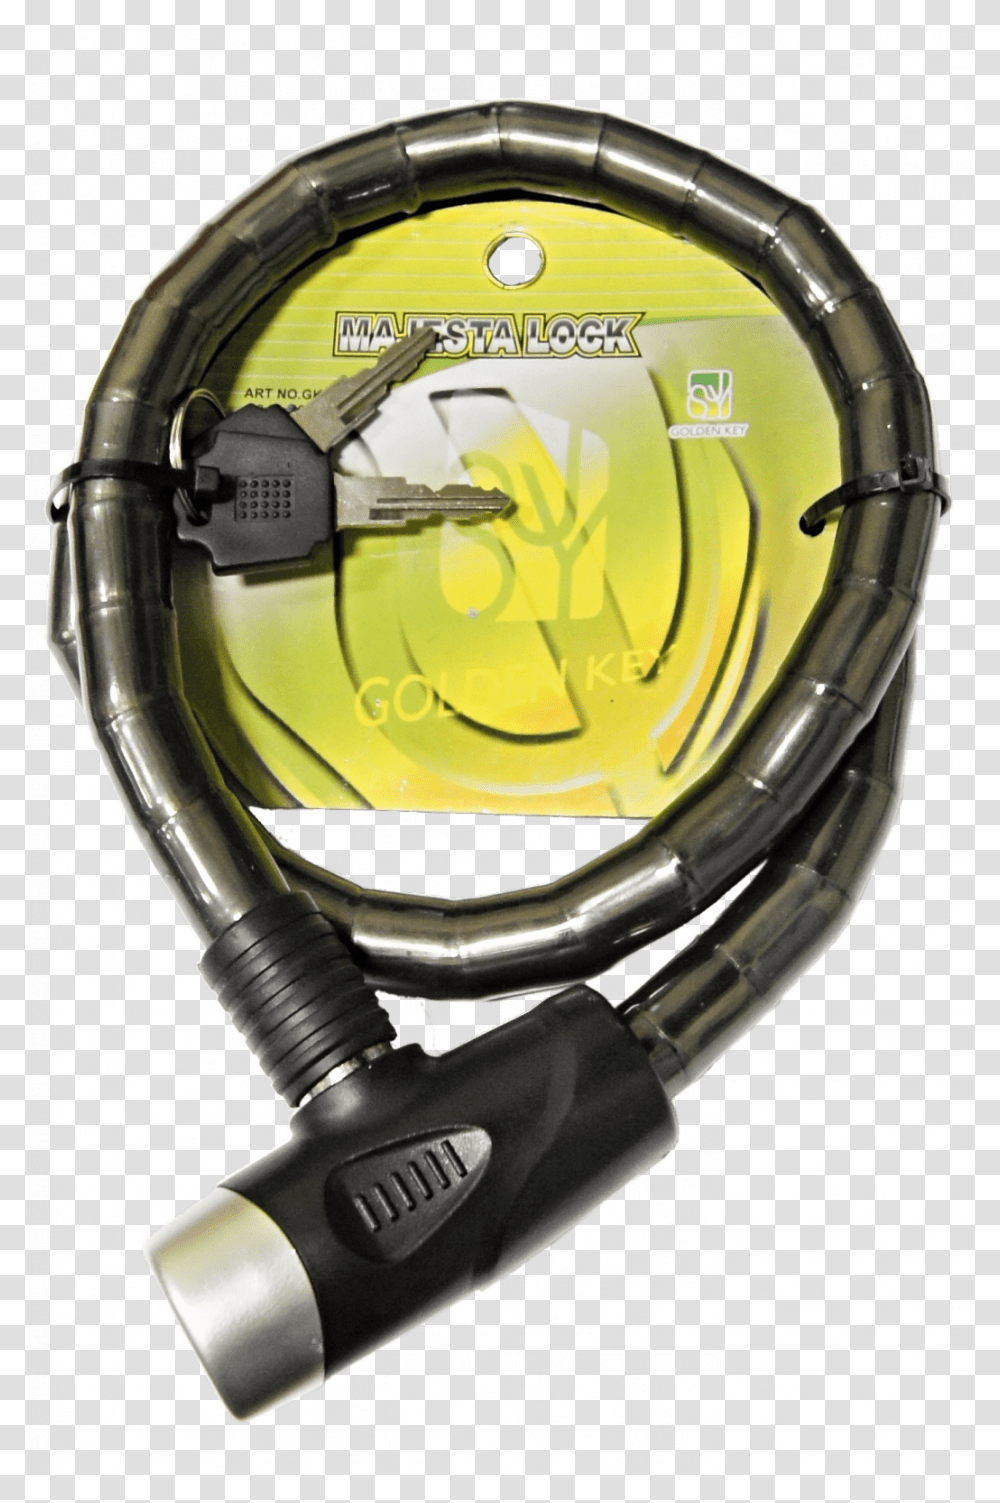 Zamek Clankovy Golden Key 18mmx100cm Diving Regulator, Helmet, Apparel, Wristwatch Transparent Png